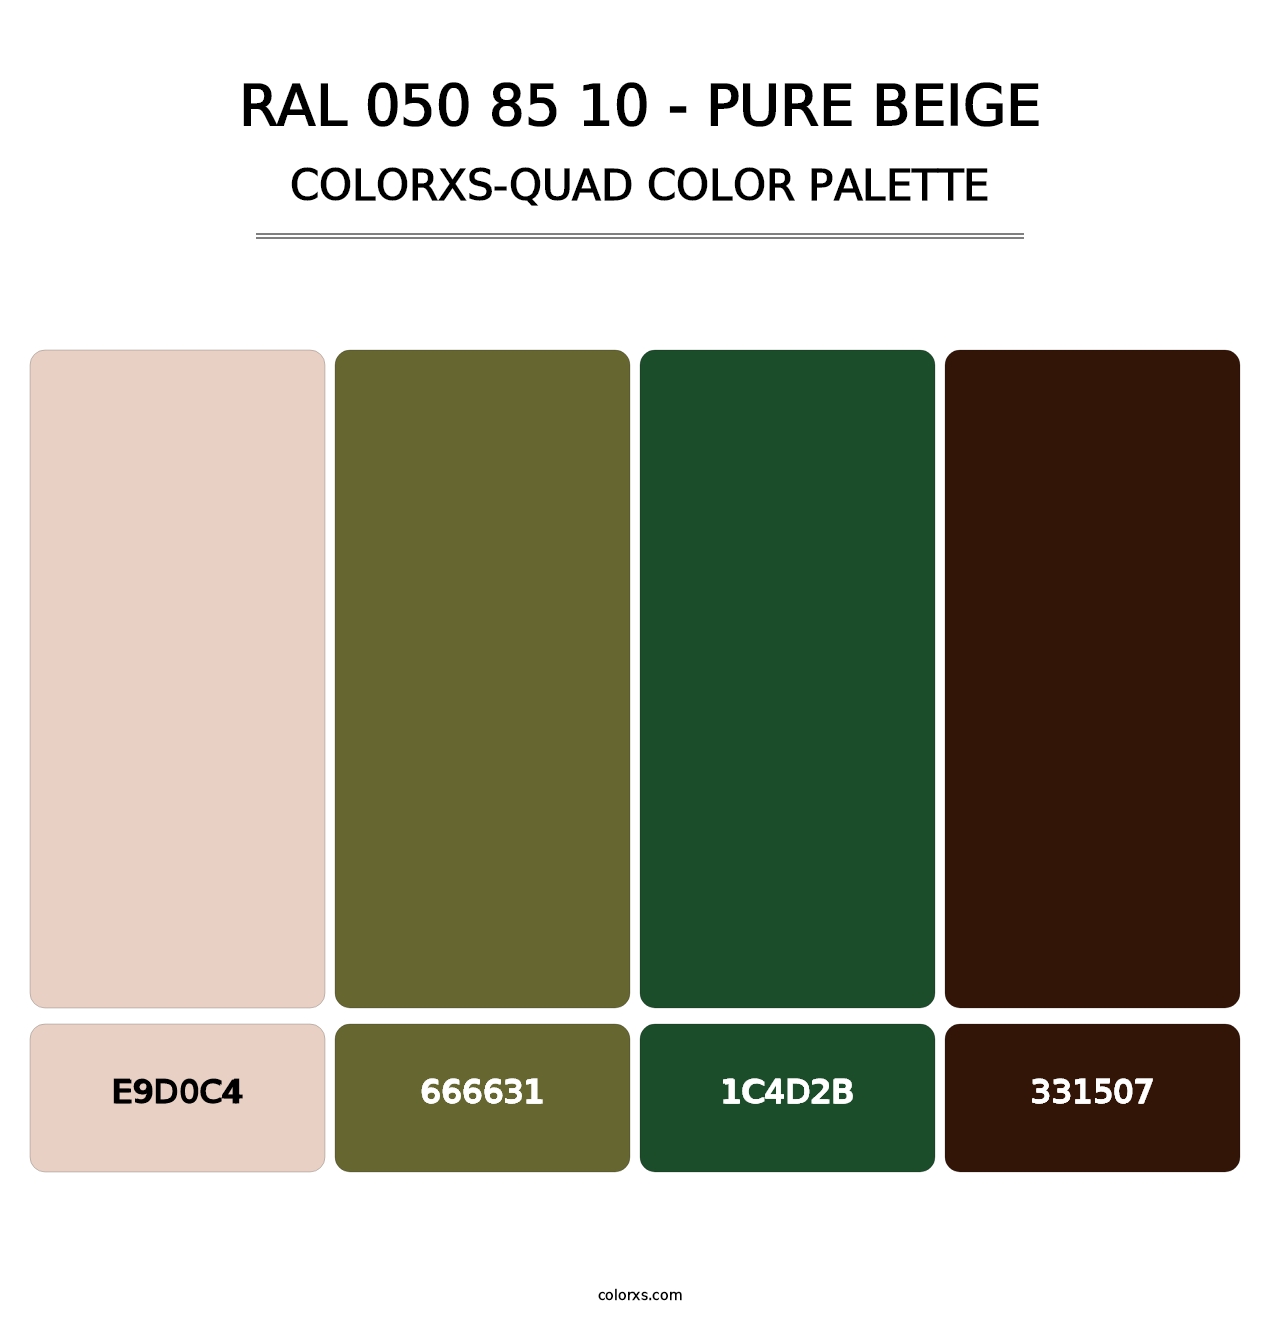 RAL 050 85 10 - Pure Beige - Colorxs Quad Palette